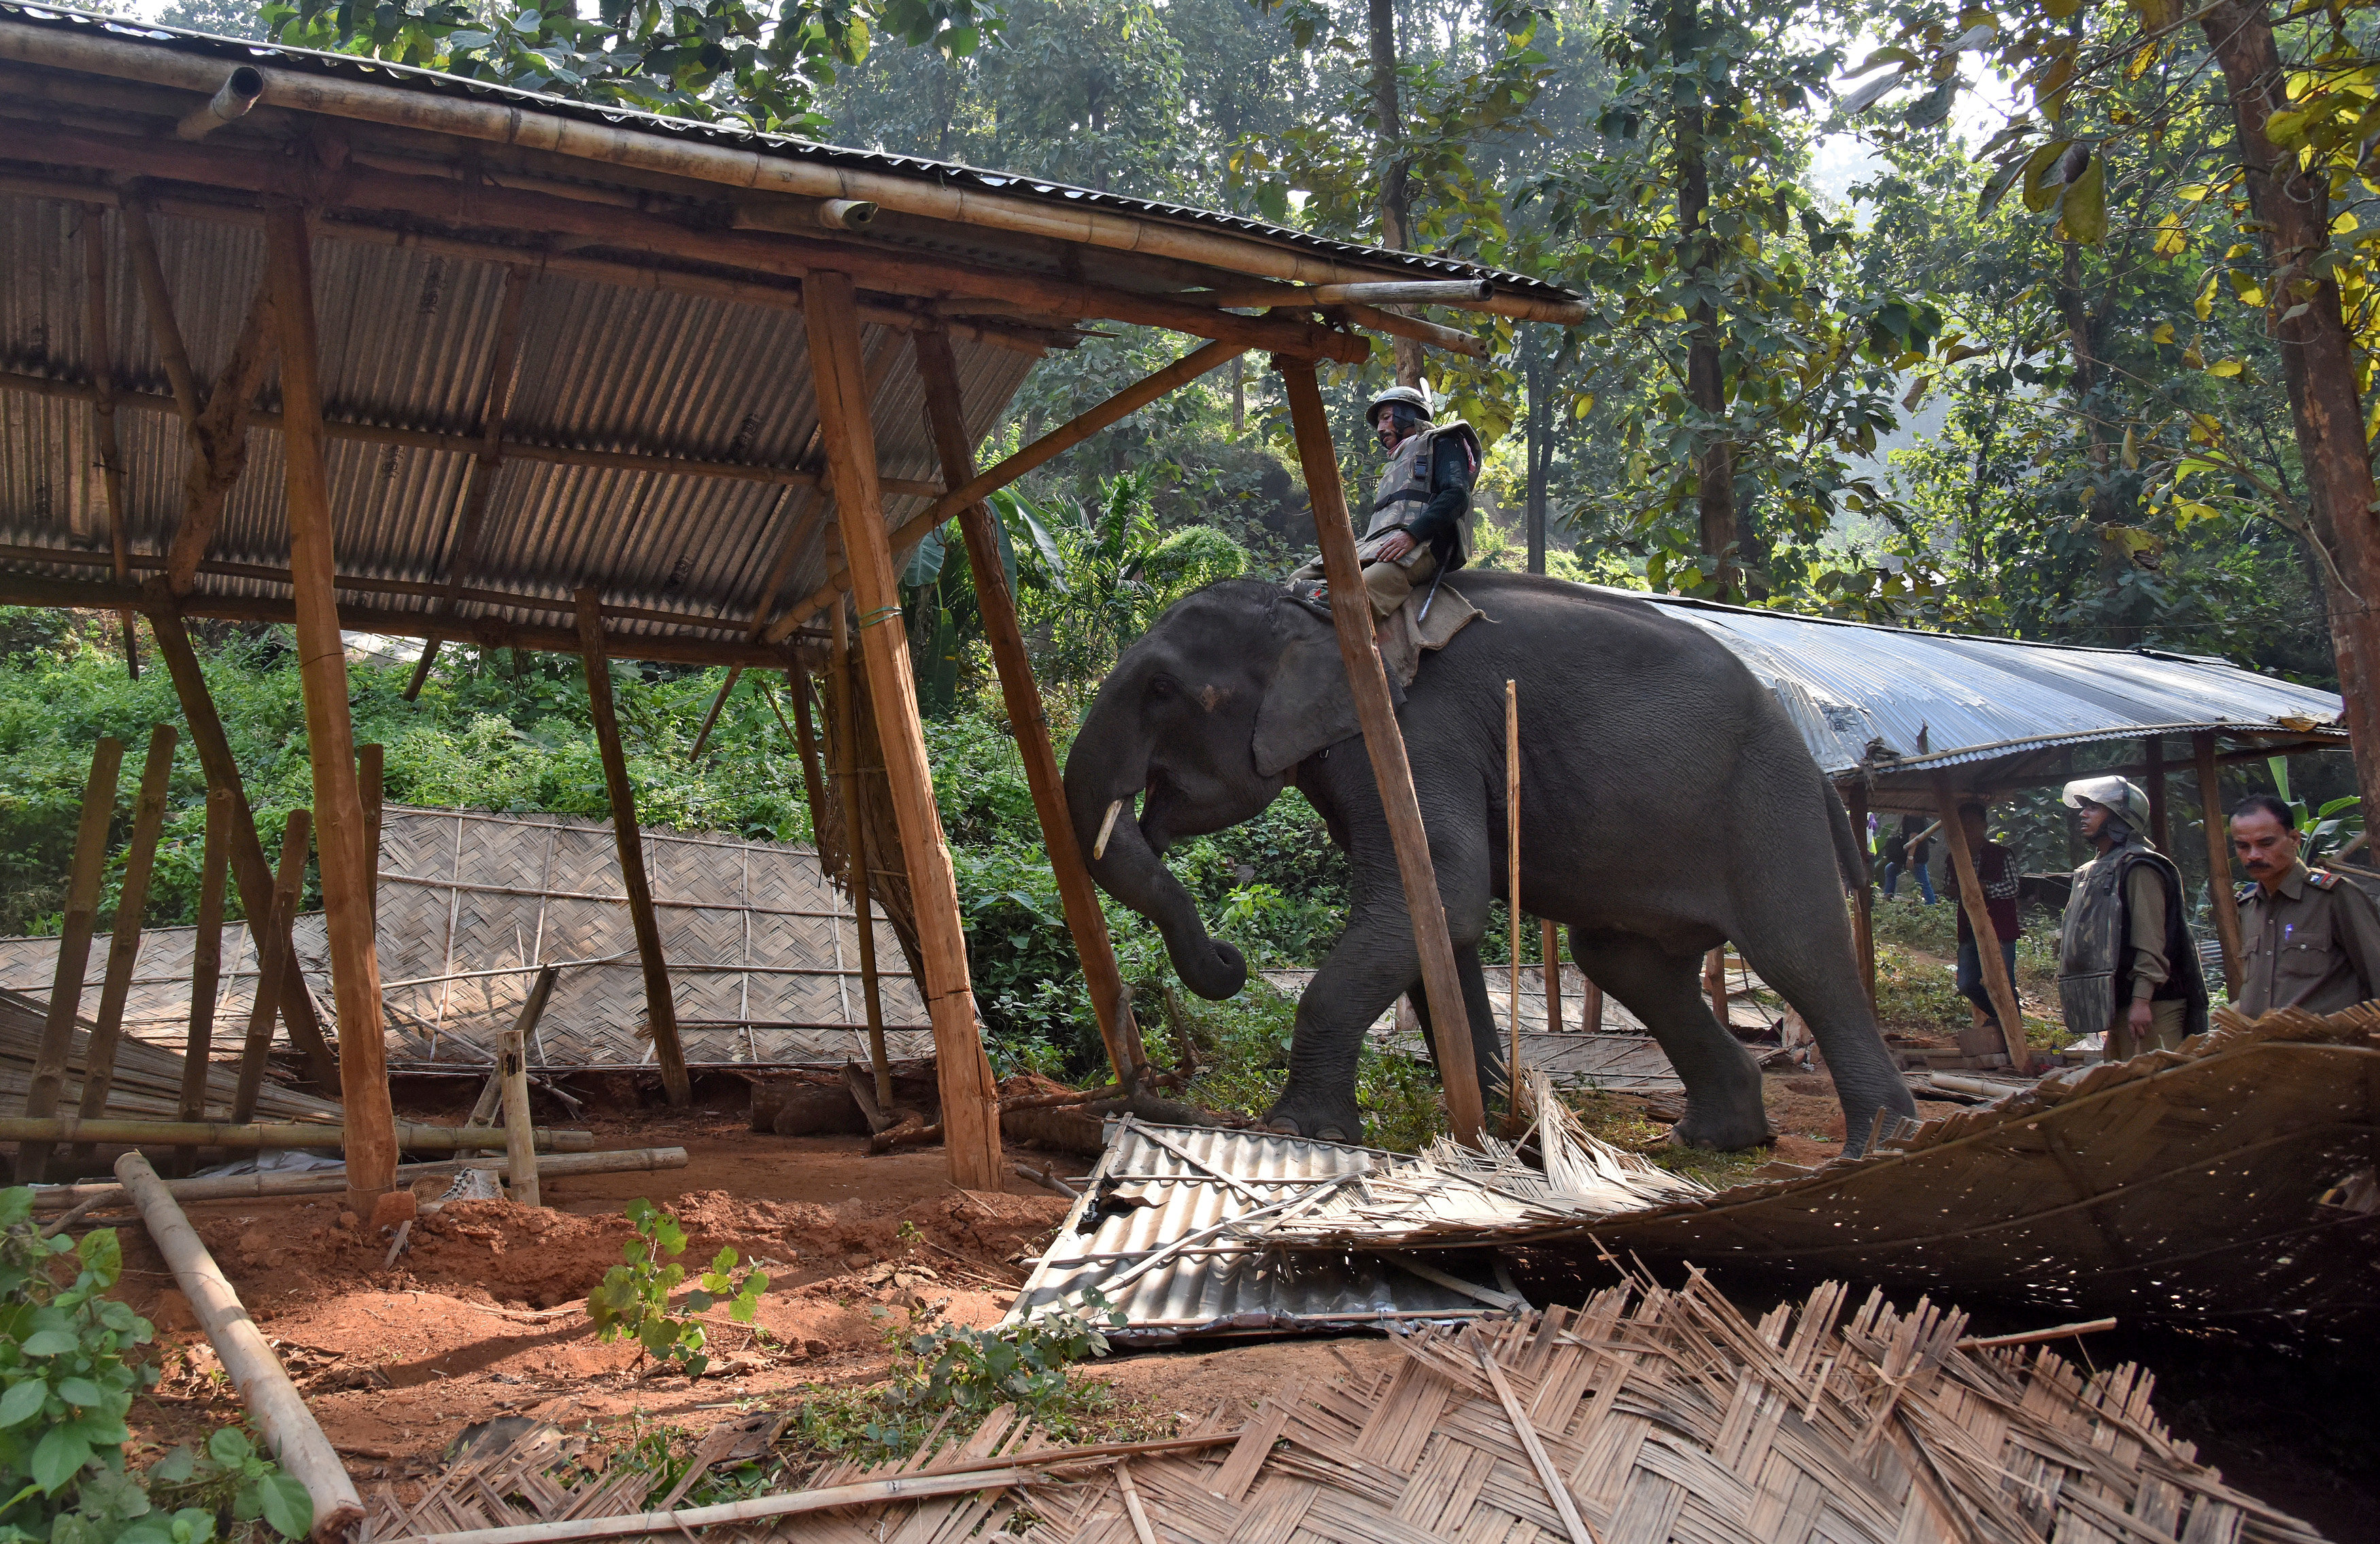 Γερμανία: Επιχείρηση διάσωσης ελεφαντίνας σε ζωολογικό κήπο [Εικόνες]